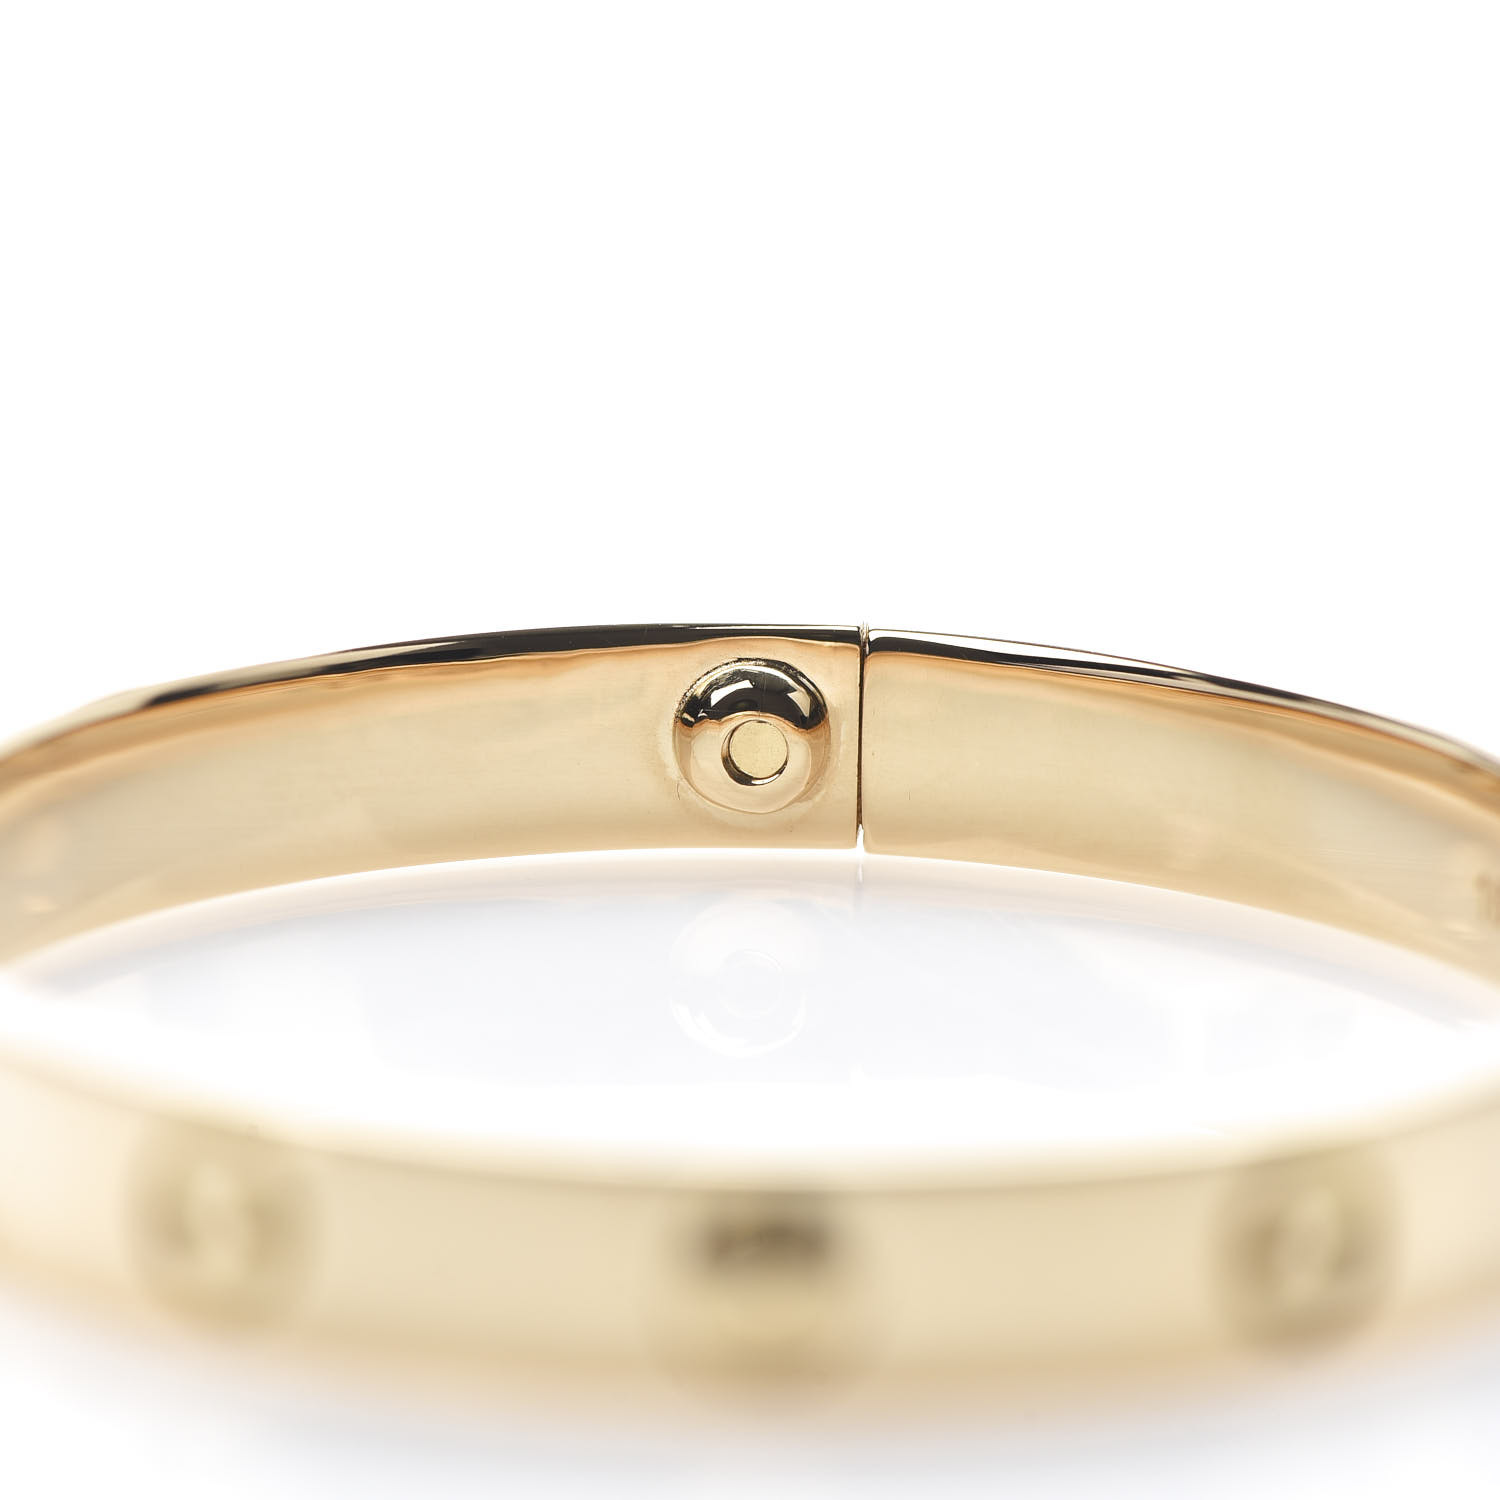 18 karat gold cartier bracelet